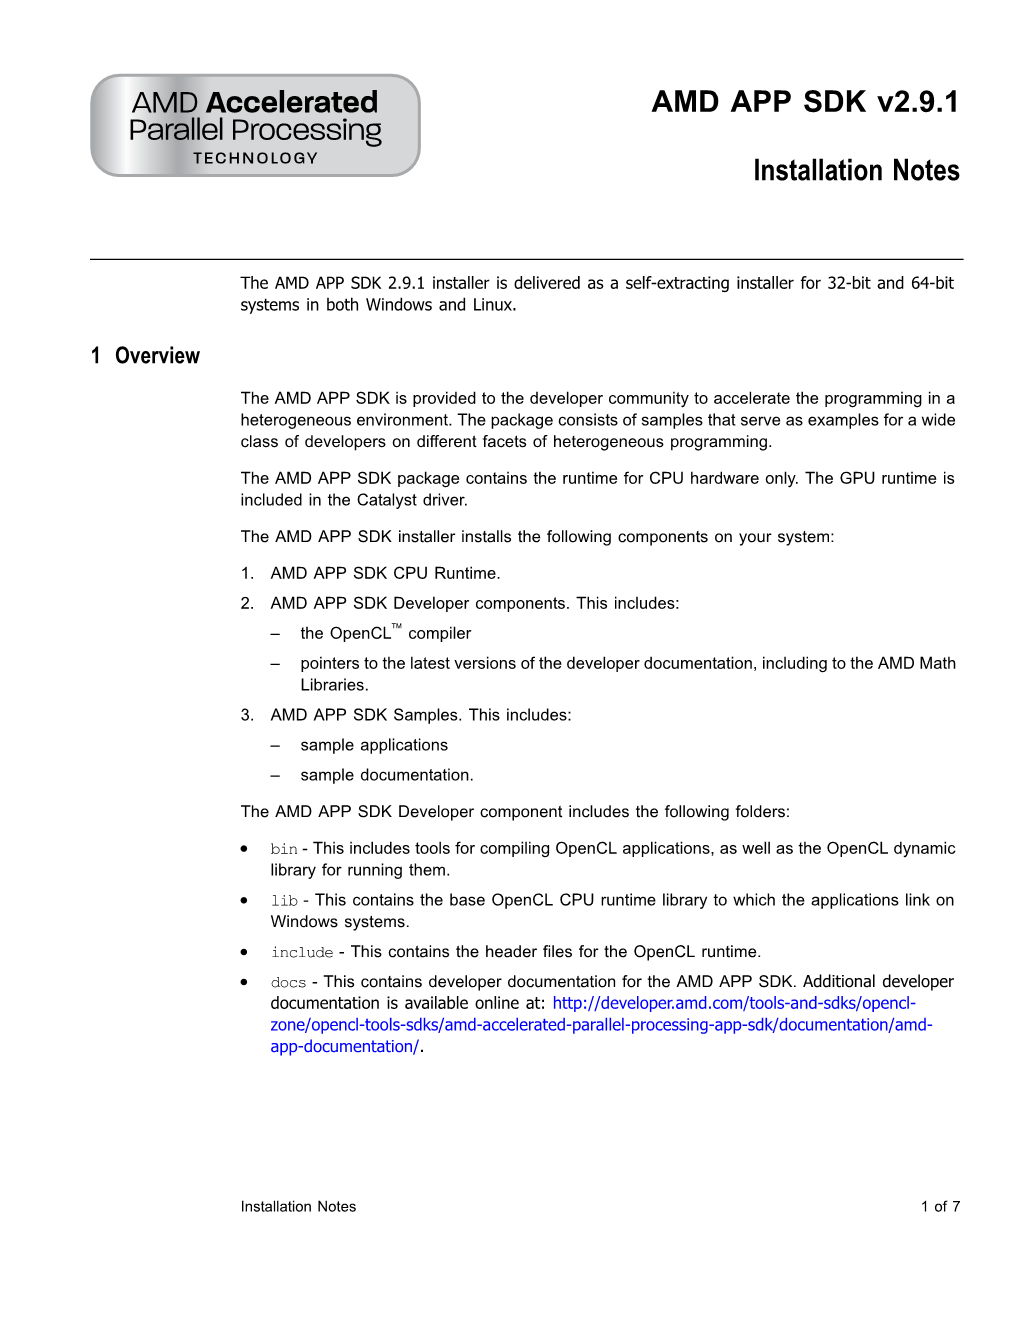 AMD APP SDK V2.9.1 Installation Notes